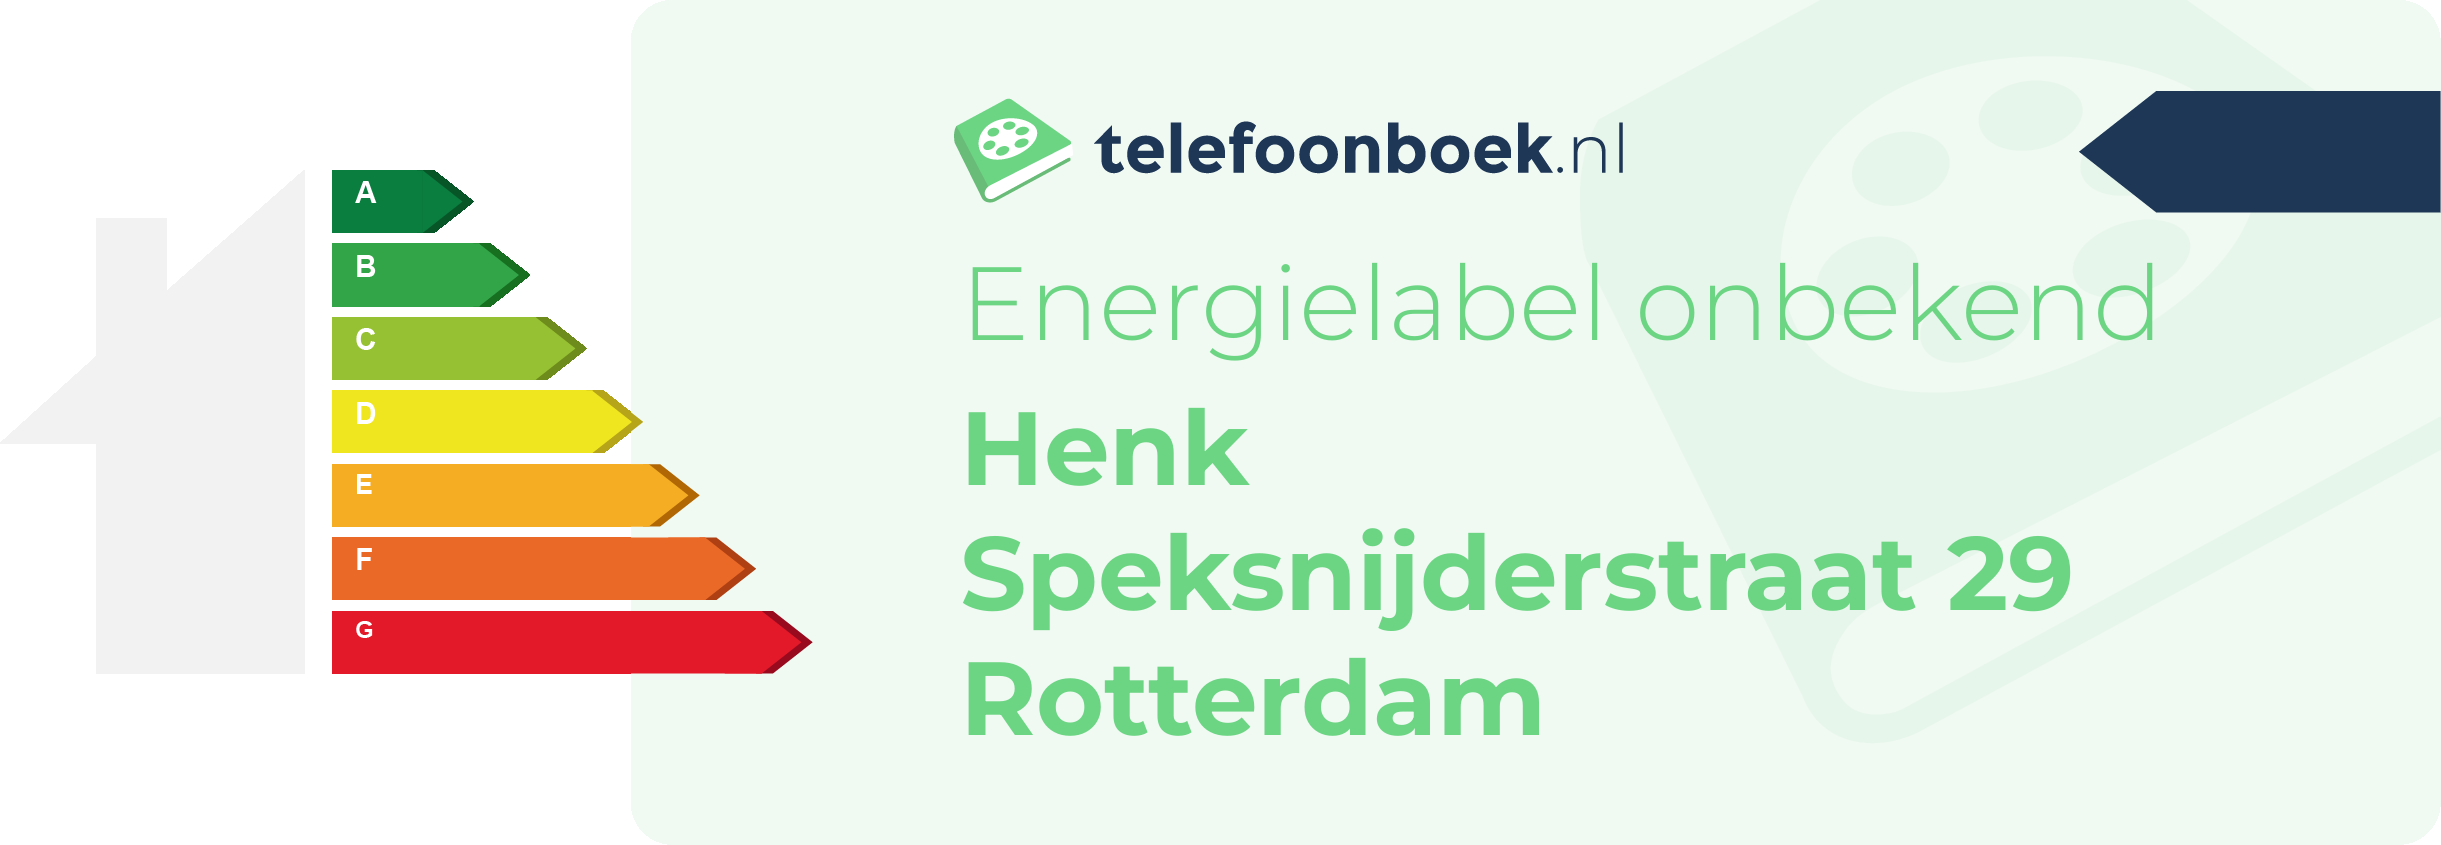 Energielabel Henk Speksnijderstraat 29 Rotterdam